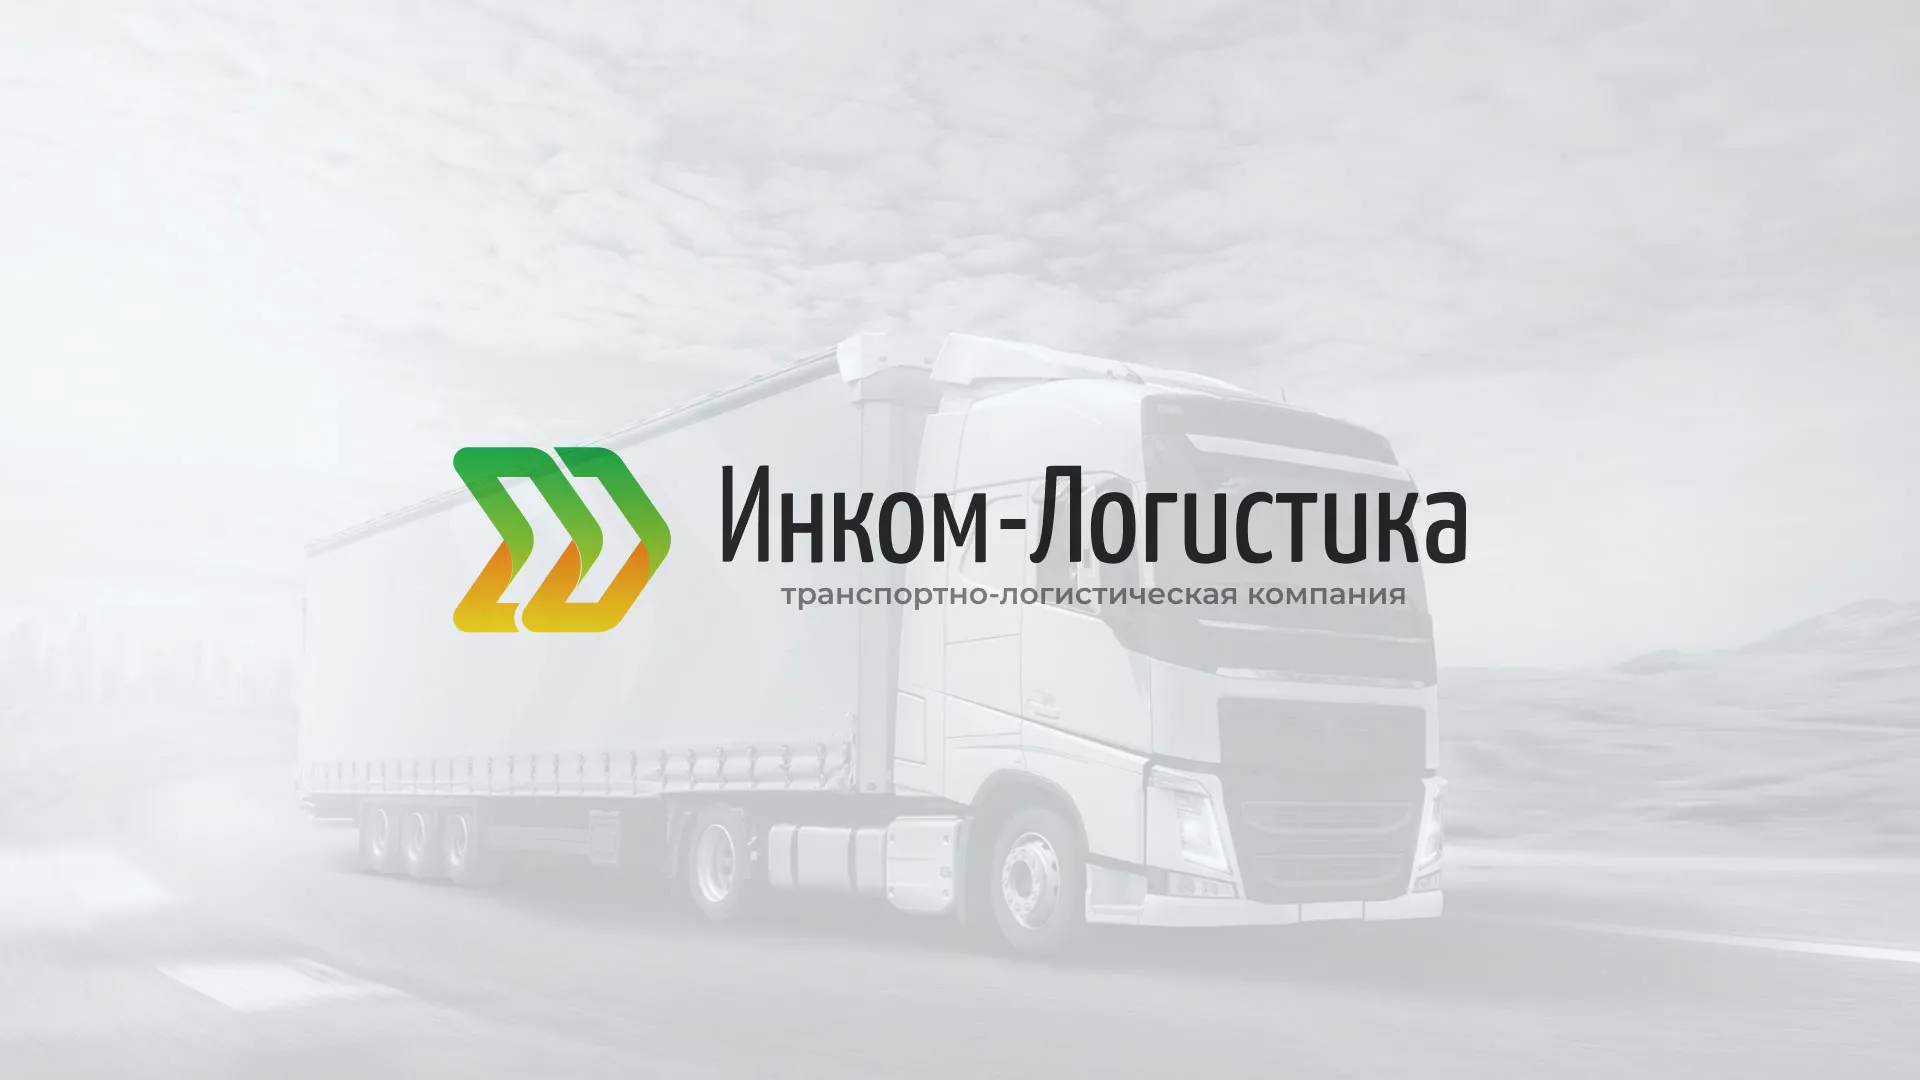 Разработка логотипа и сайта компании «Инком-Логистика» в Богородске